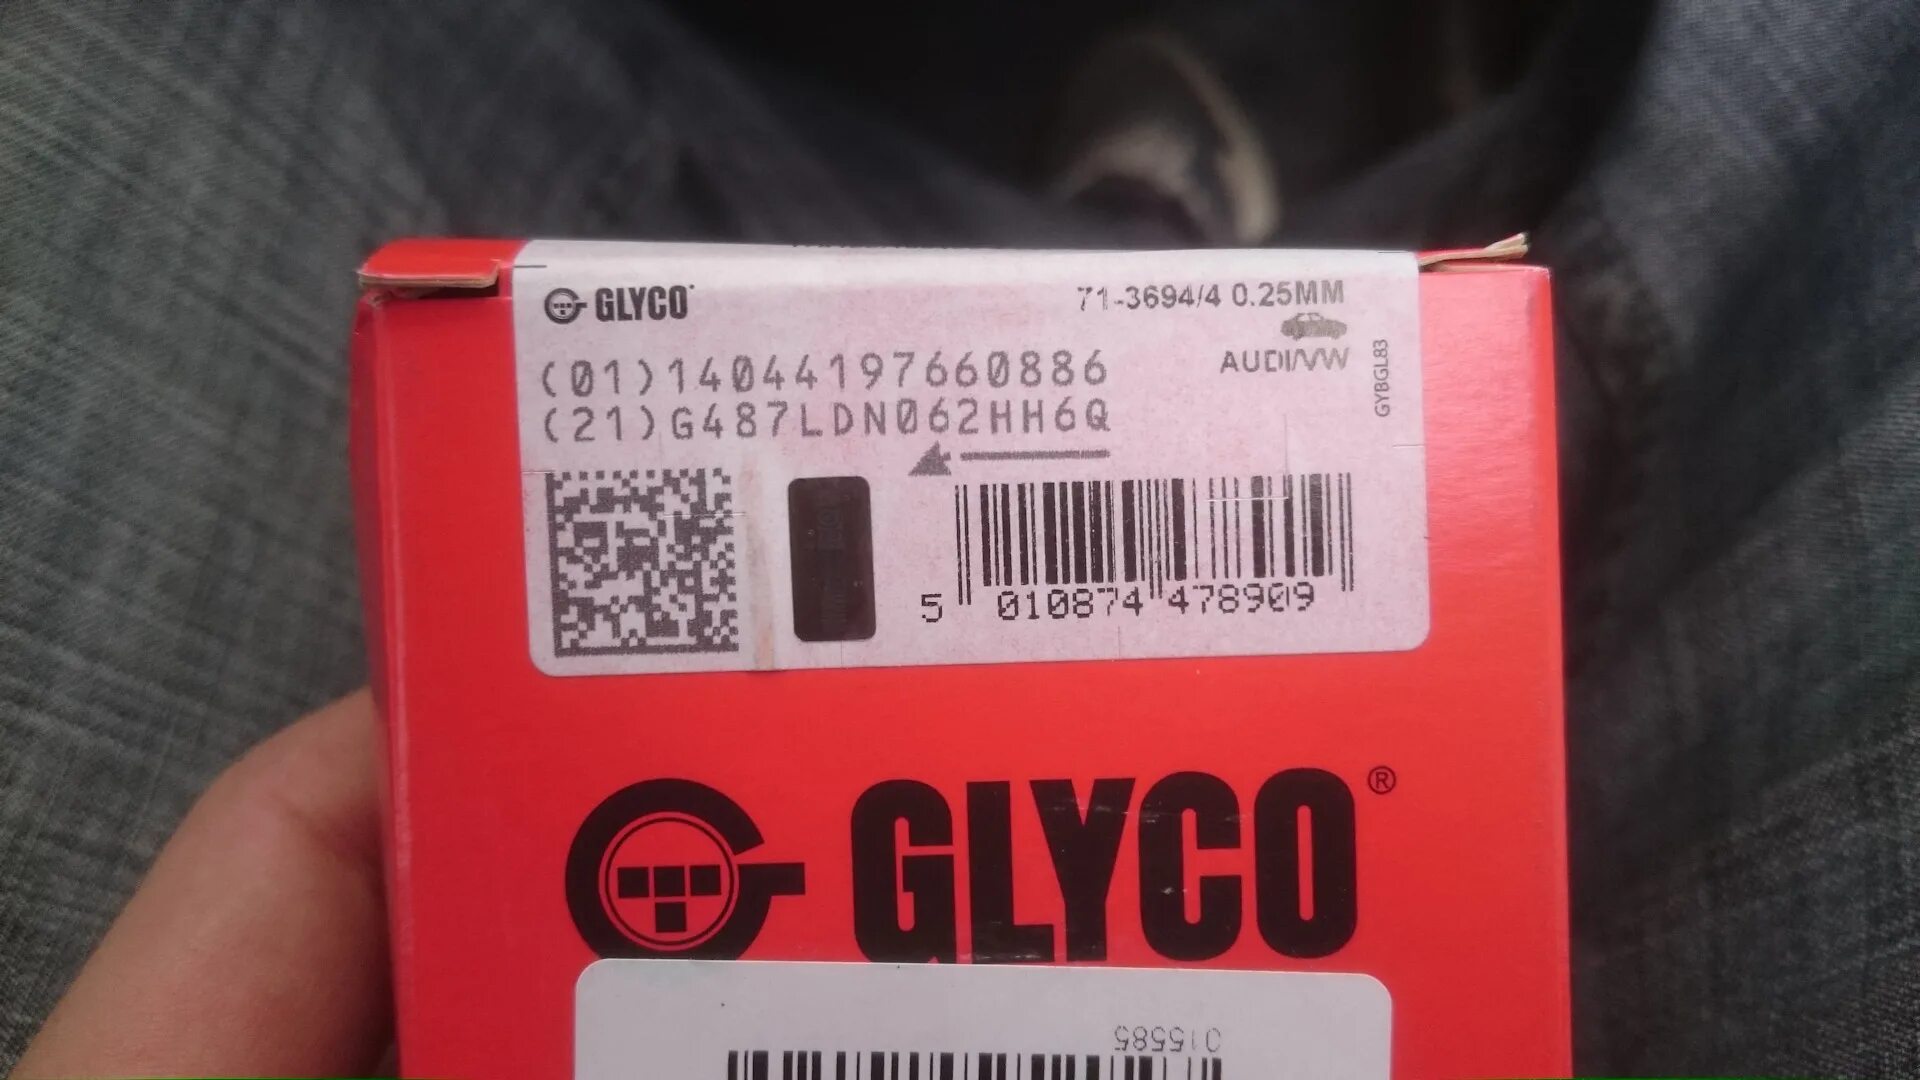 0 15 0 25 мм. GLYCO 71-3694/4 STD. GLYCO номер: 71-3694/4 STD. 71-3694/4 0.25Mm. 71-4118/4 0.25Mm.